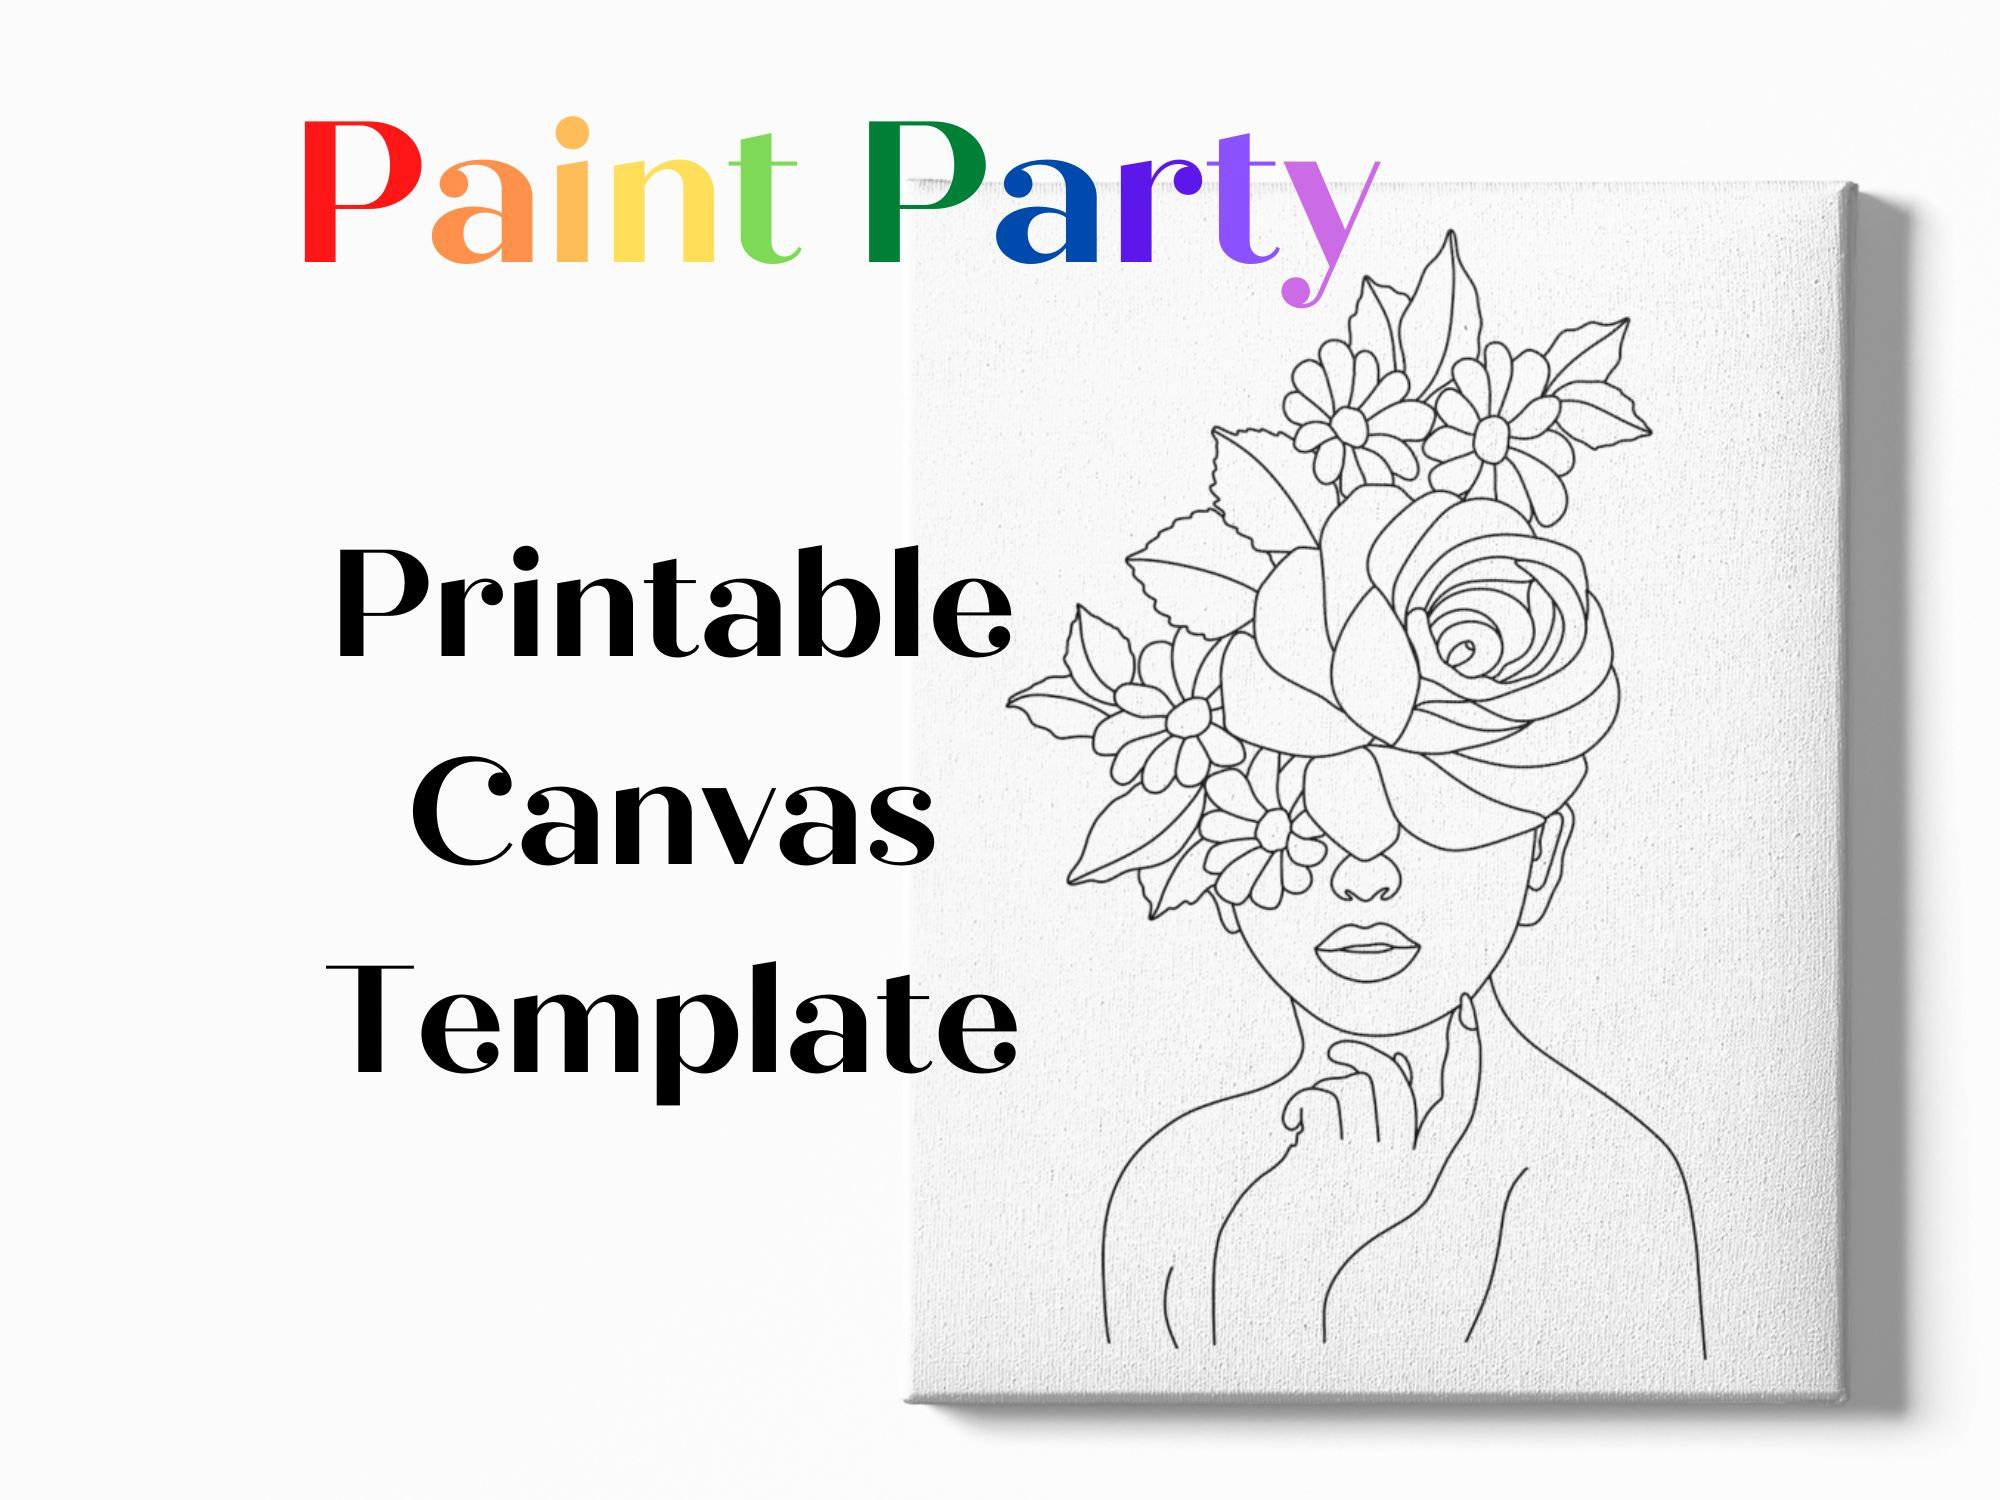 6 Sip and Paint Party Kit Canvas, Pre Drawn Canvas, Bulk Paint Kit